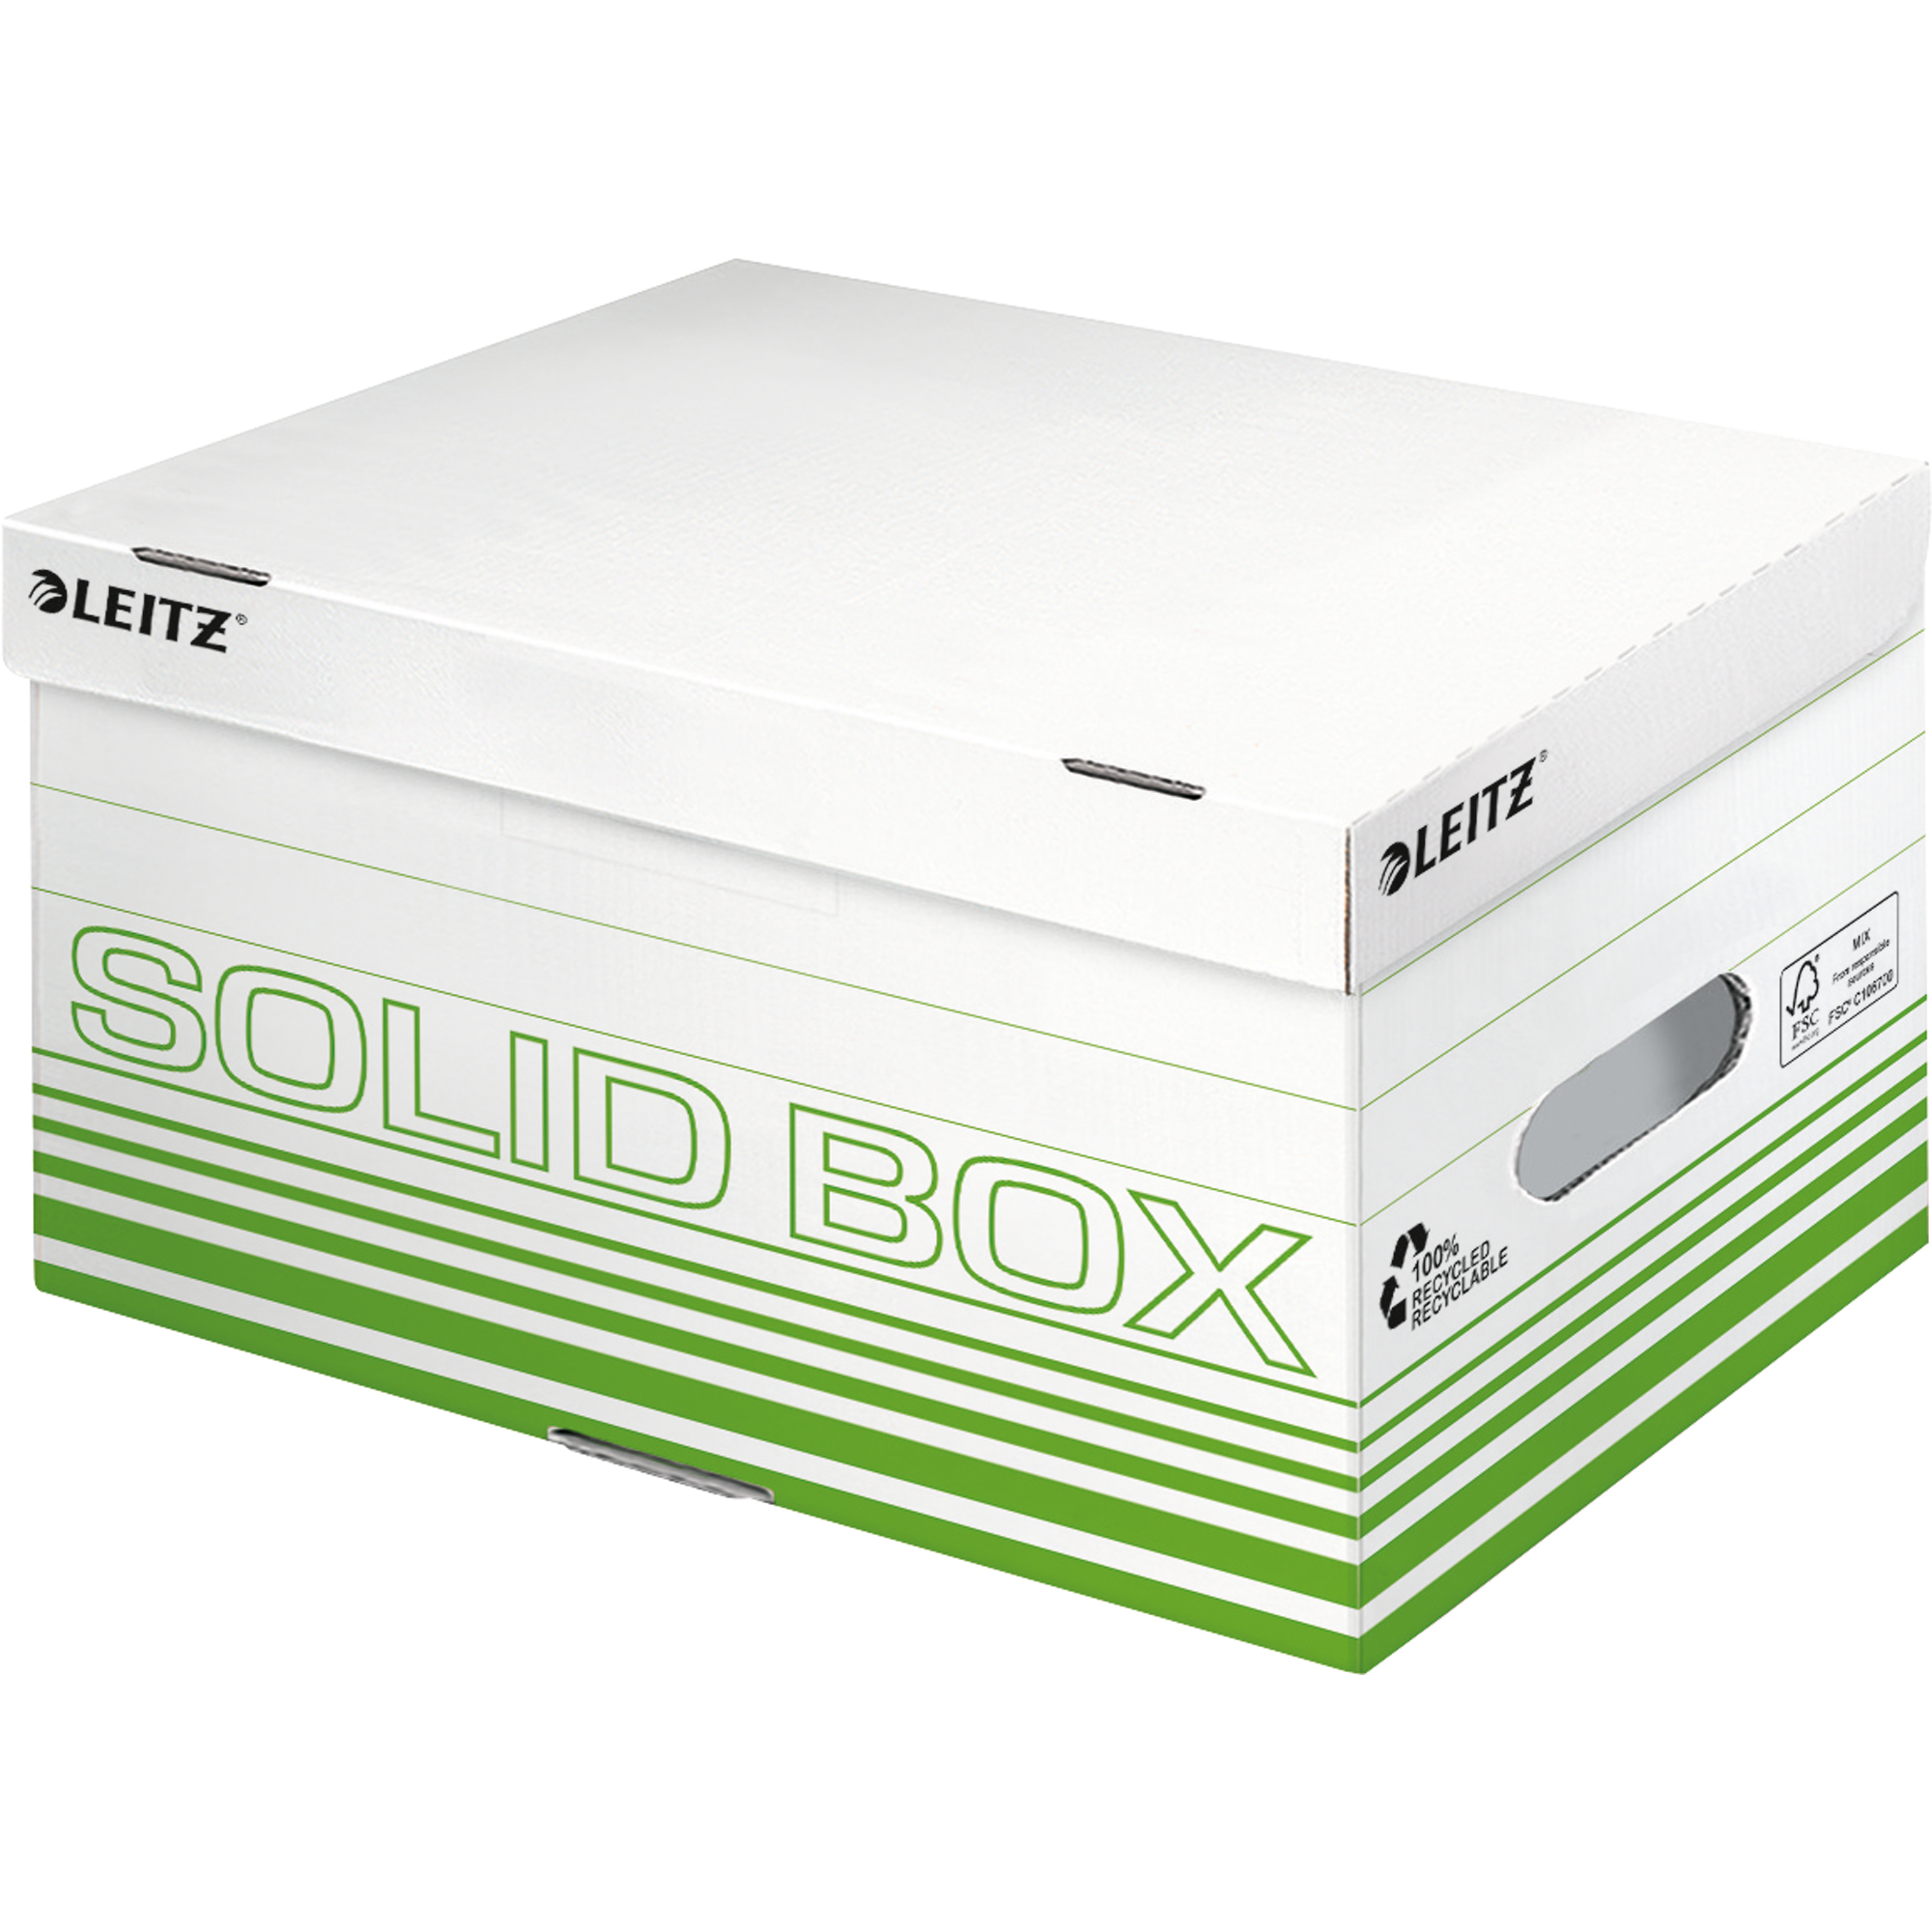 Leitz Archivbox Solid S weiß, hellgrün